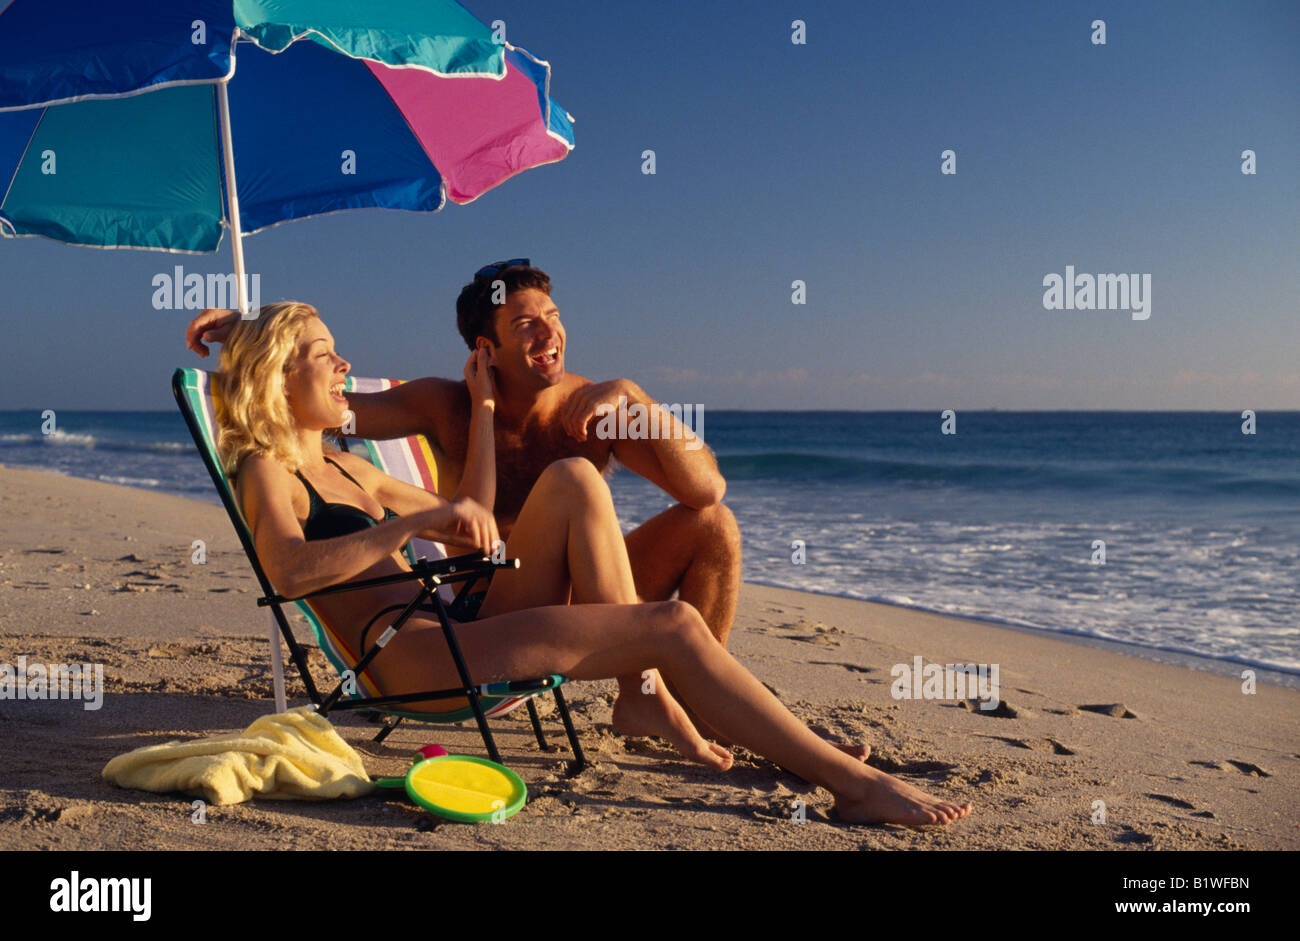 Amérique du Nord USA Floride Fort Lauderdale jeune couple sur une plage de sable assis sous un parasol parasol Banque D'Images